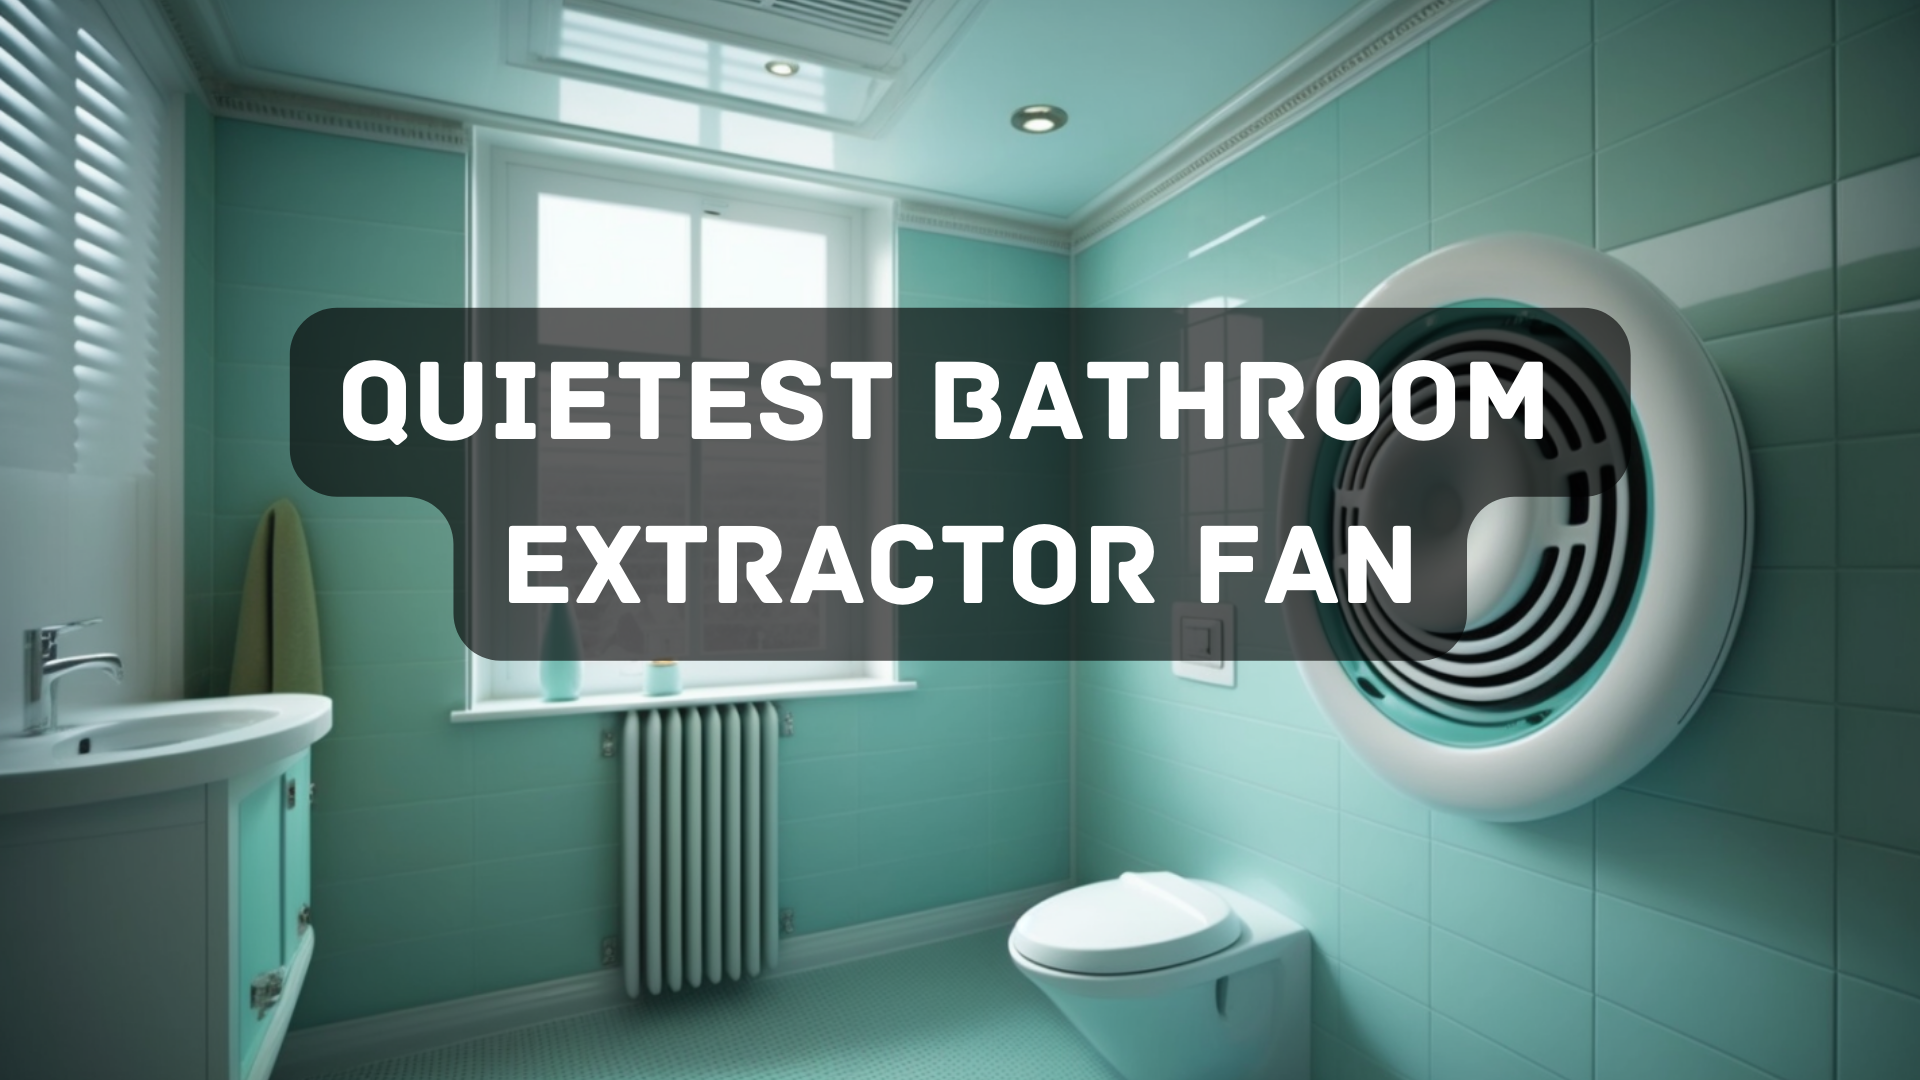 Quietest bathroom extractor fan